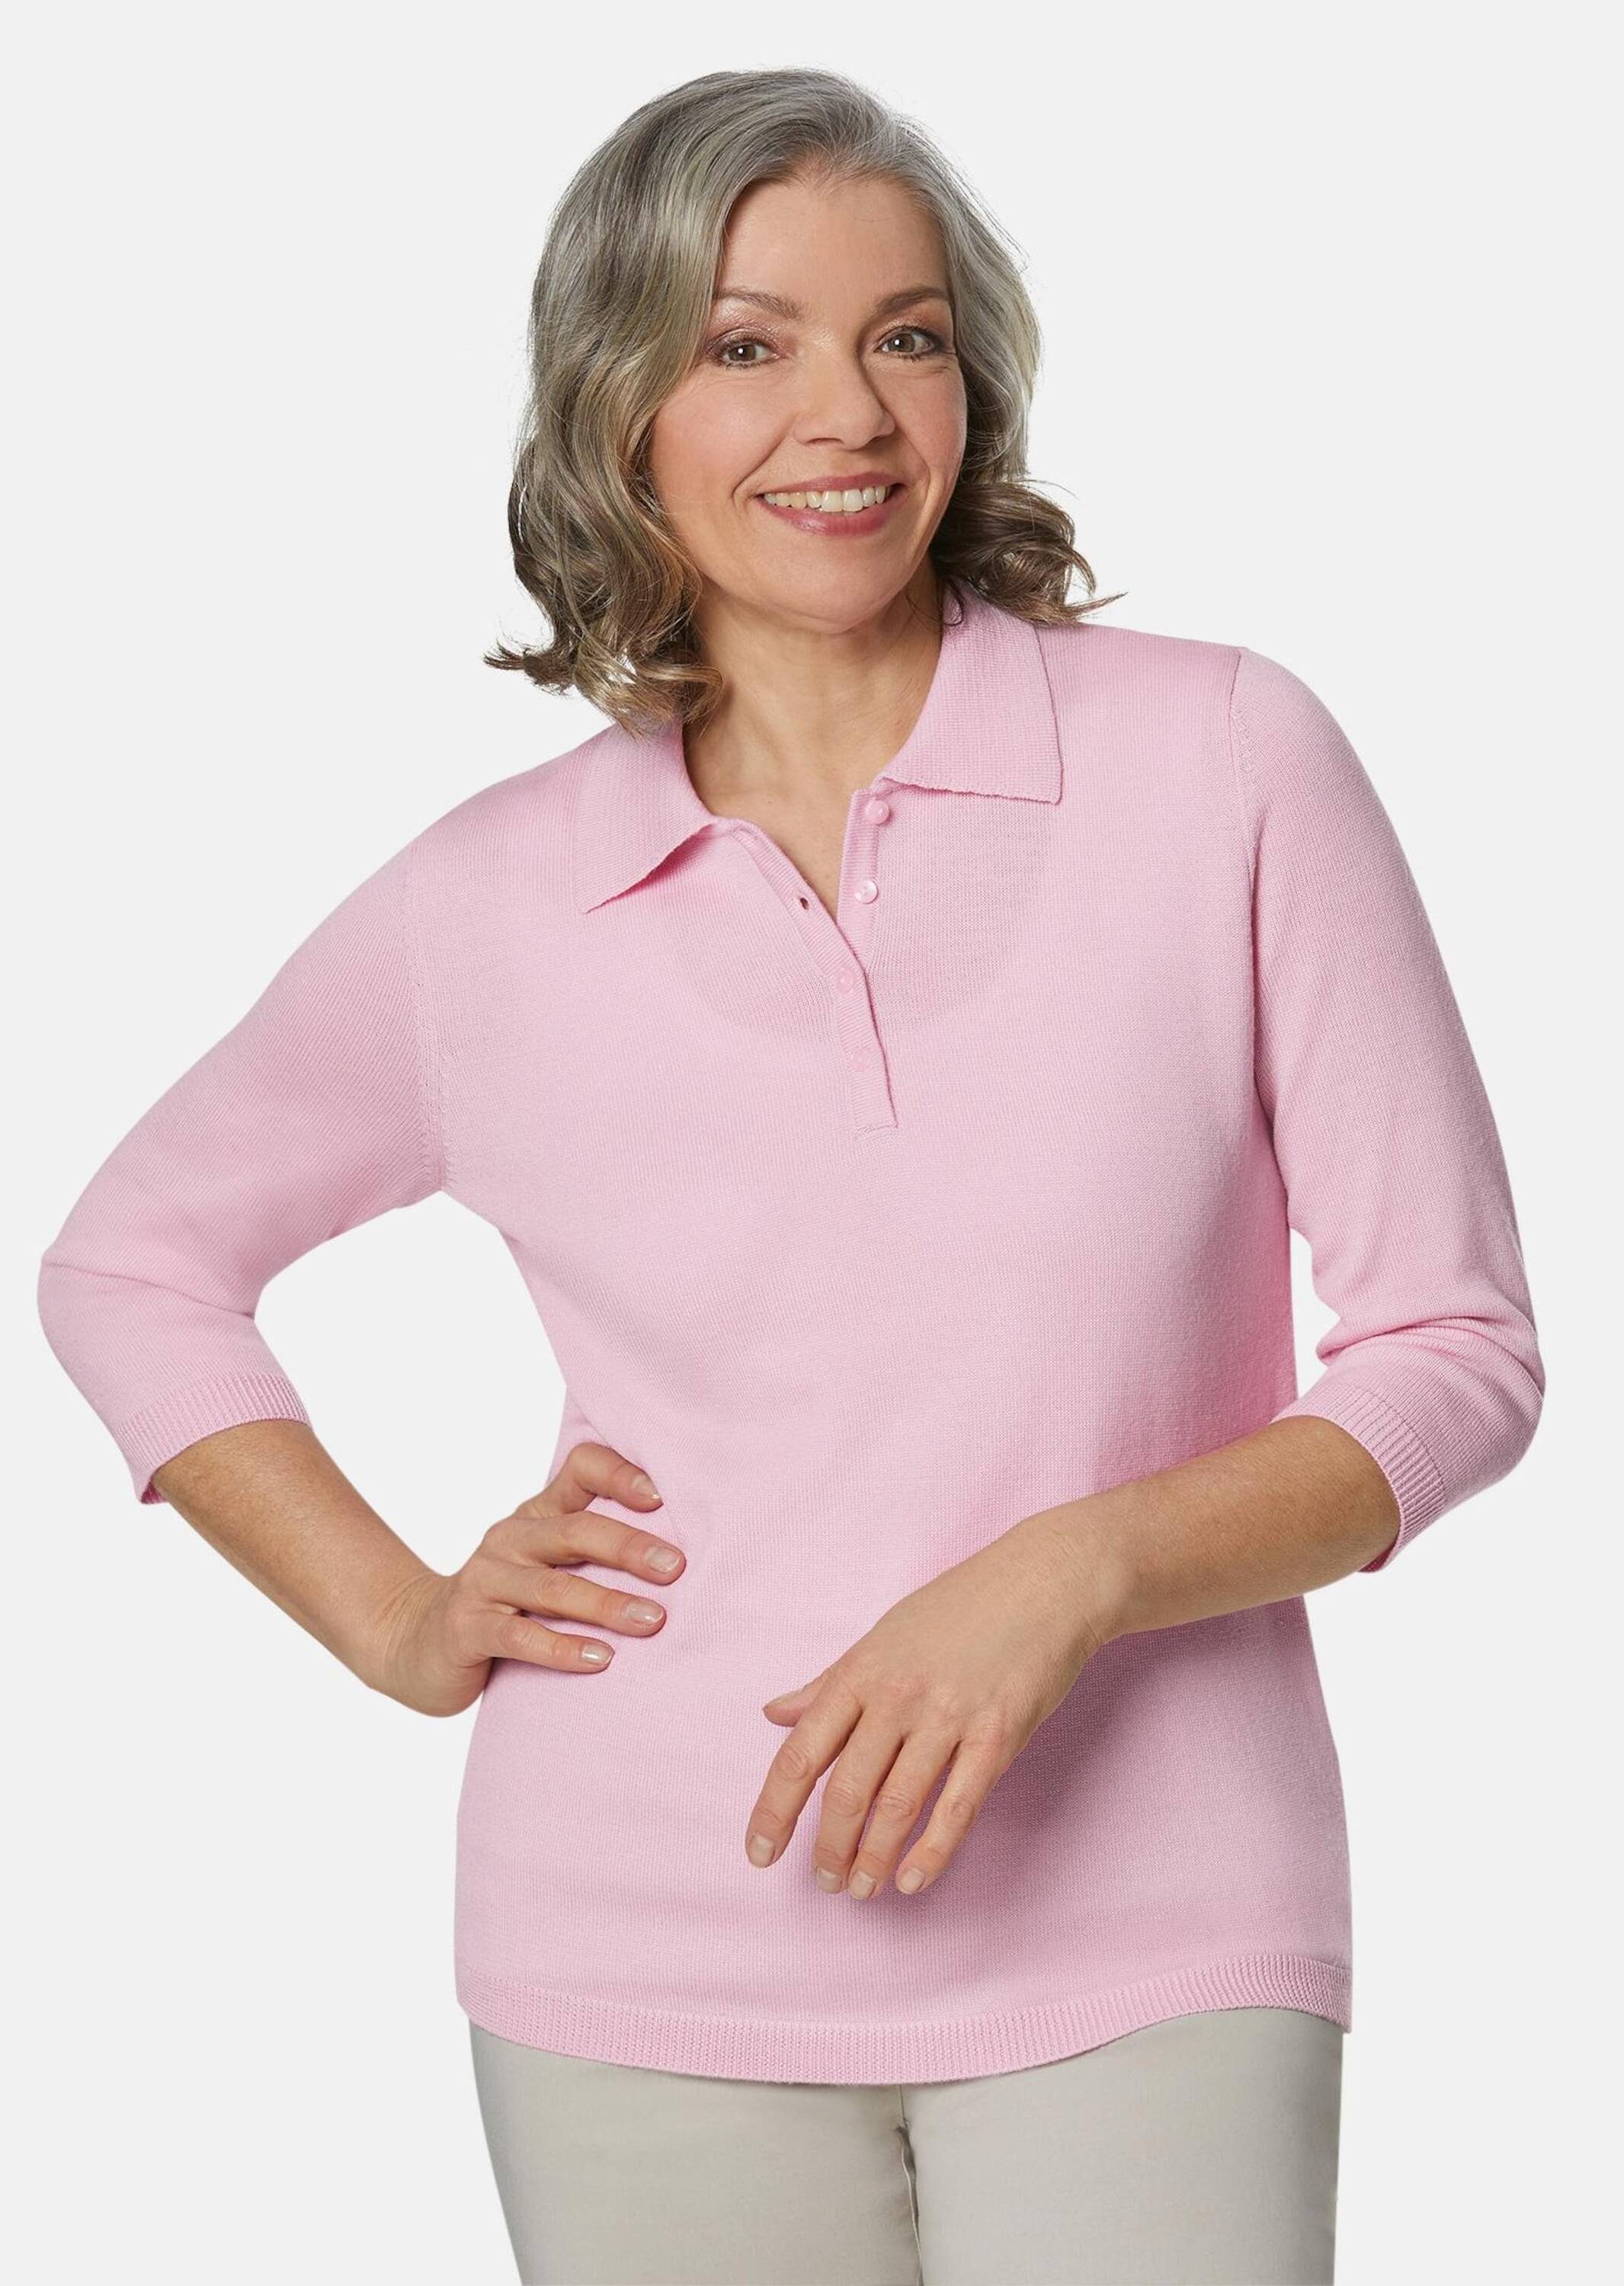 GOLDNER Strickpullover Kurzgröße: Pullover in hochwertiger Qualität rosa